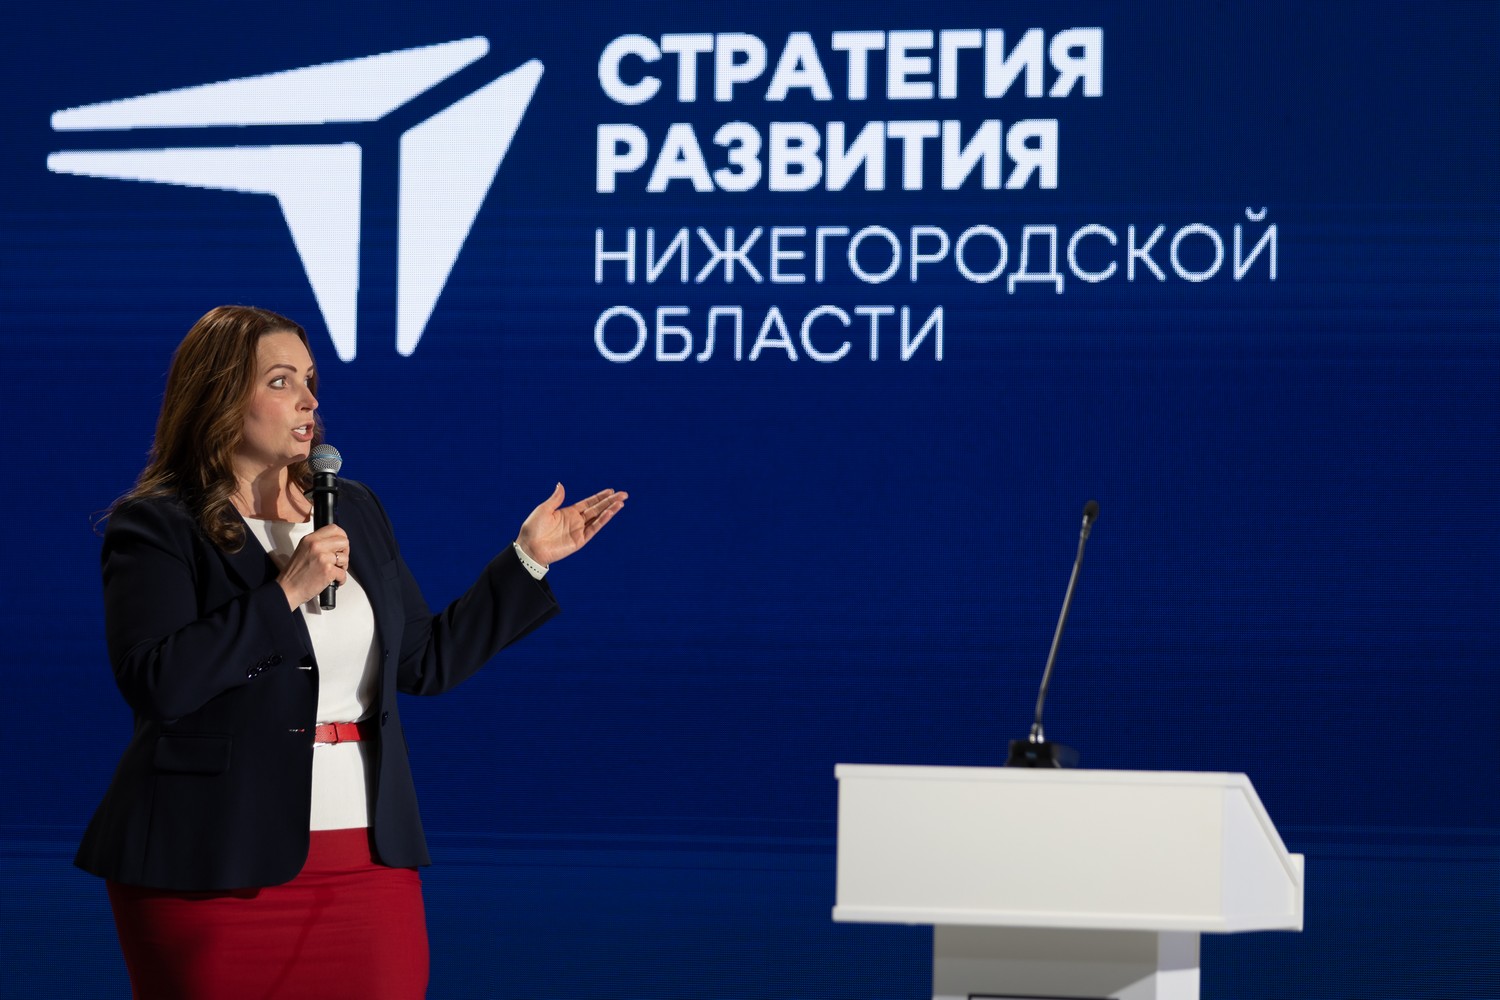 Ольга Щетинина: «Мы должны актуализировать стратегию развития региона с учетом новых вызовов»